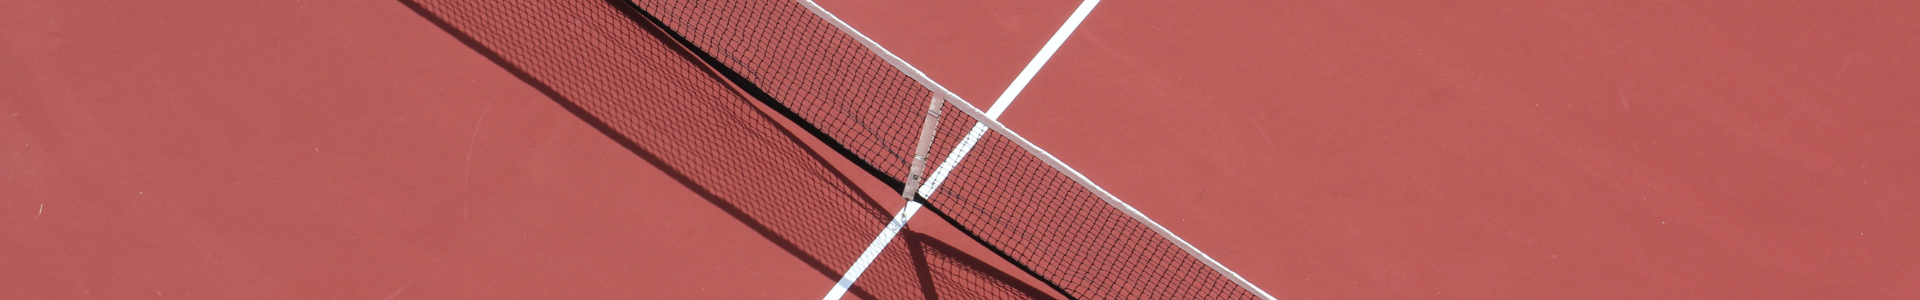 surface court de tennis résine synthétique